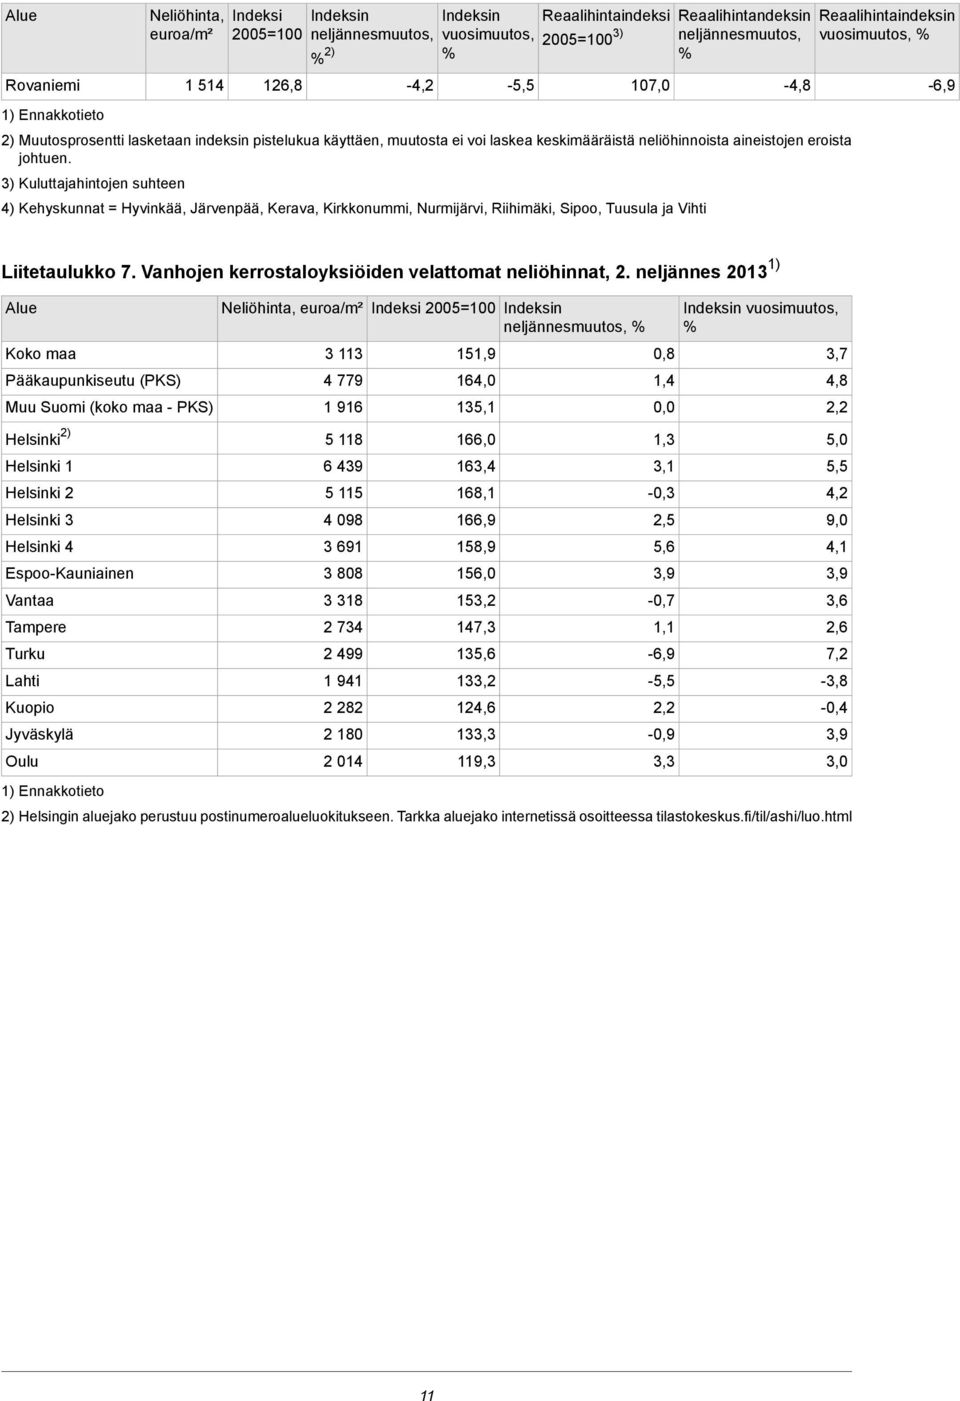 Kuluttajahintojen suhteen 107,0 4) Kehyskunnat = Hyvinkää, Järvenpää, Kerava, Kirkkonummi, Nurmijärvi, Riihimäki, Sipoo, Tuusula ja Vihti -4,8-6,9 Liitetaulukko 7 Vanhojen kerrostaloyksiöiden